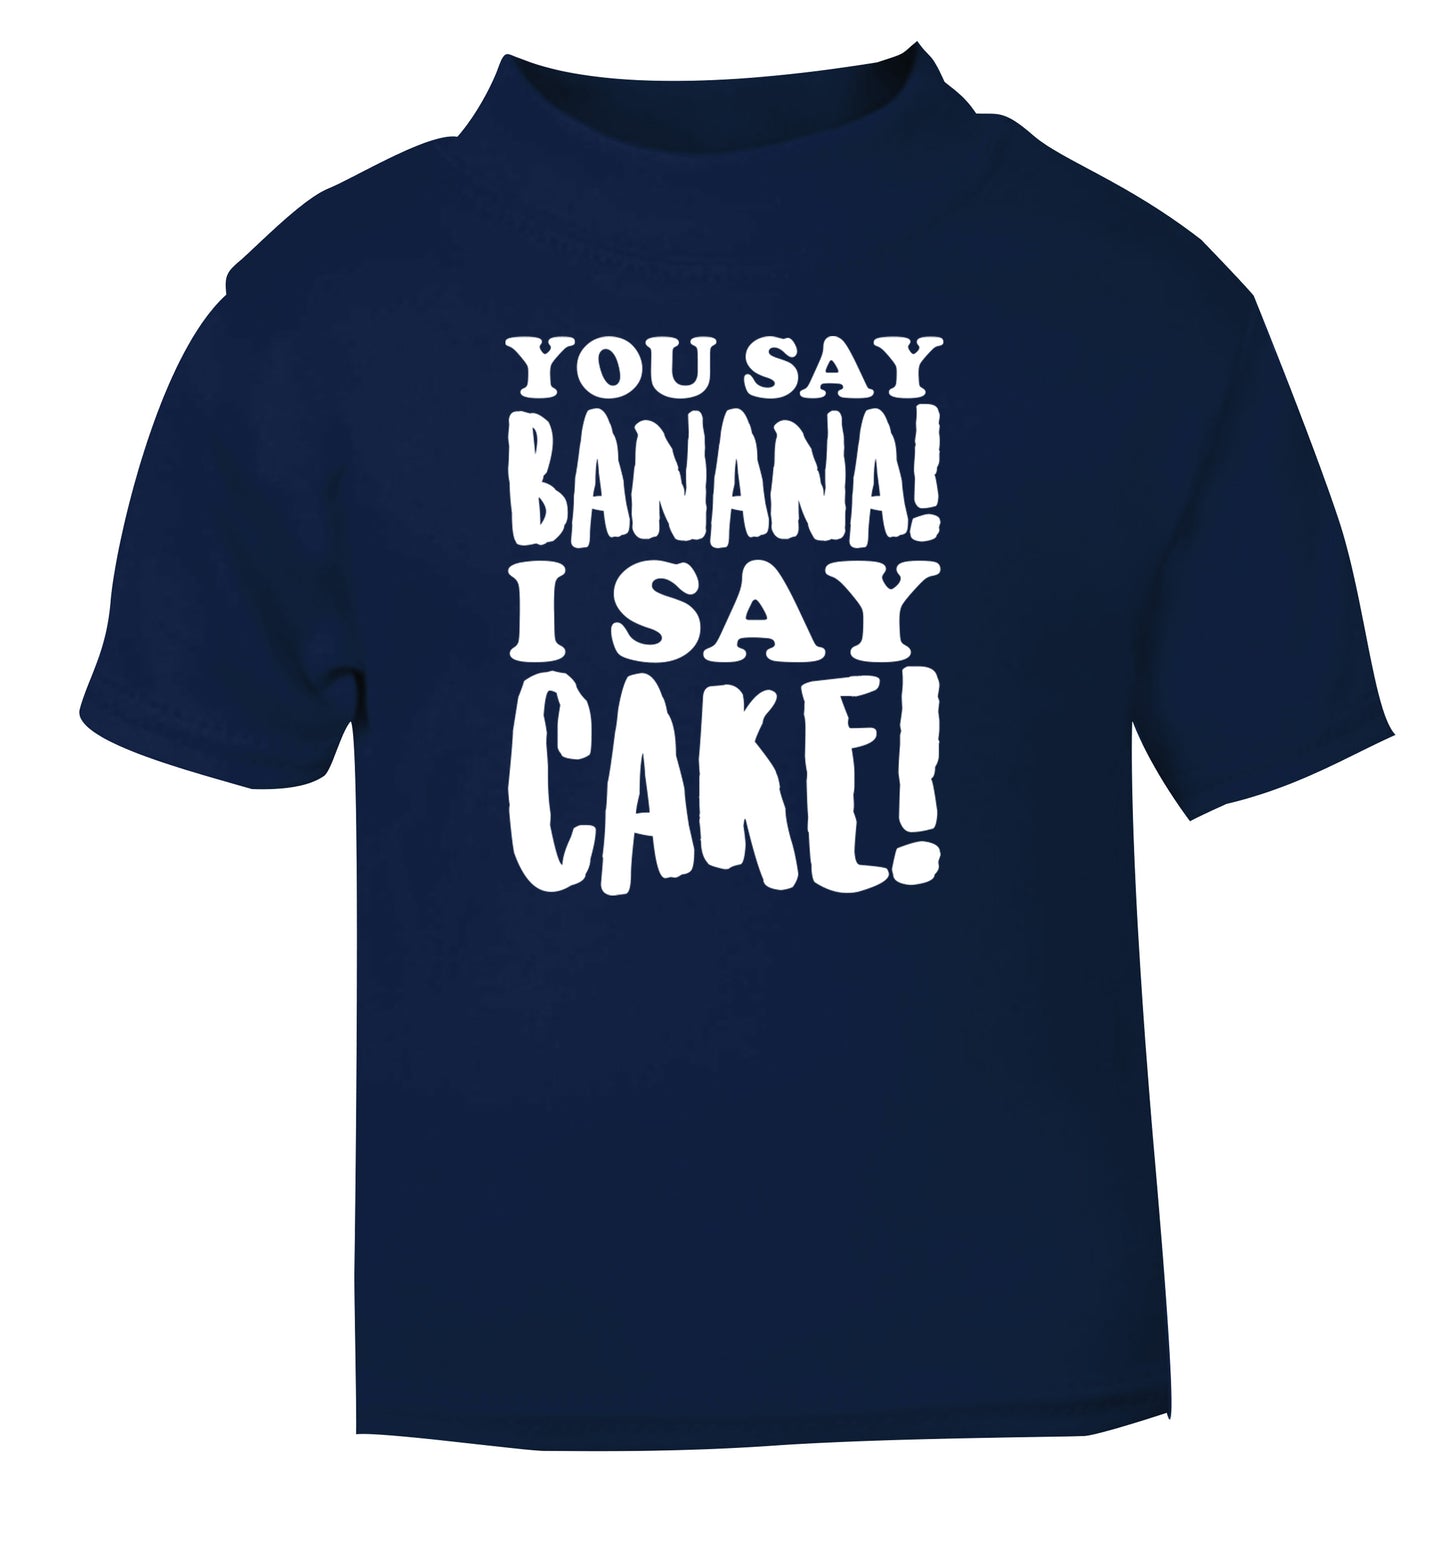 You say banana I say cake! navy Baby Toddler Tshirt 2 Years